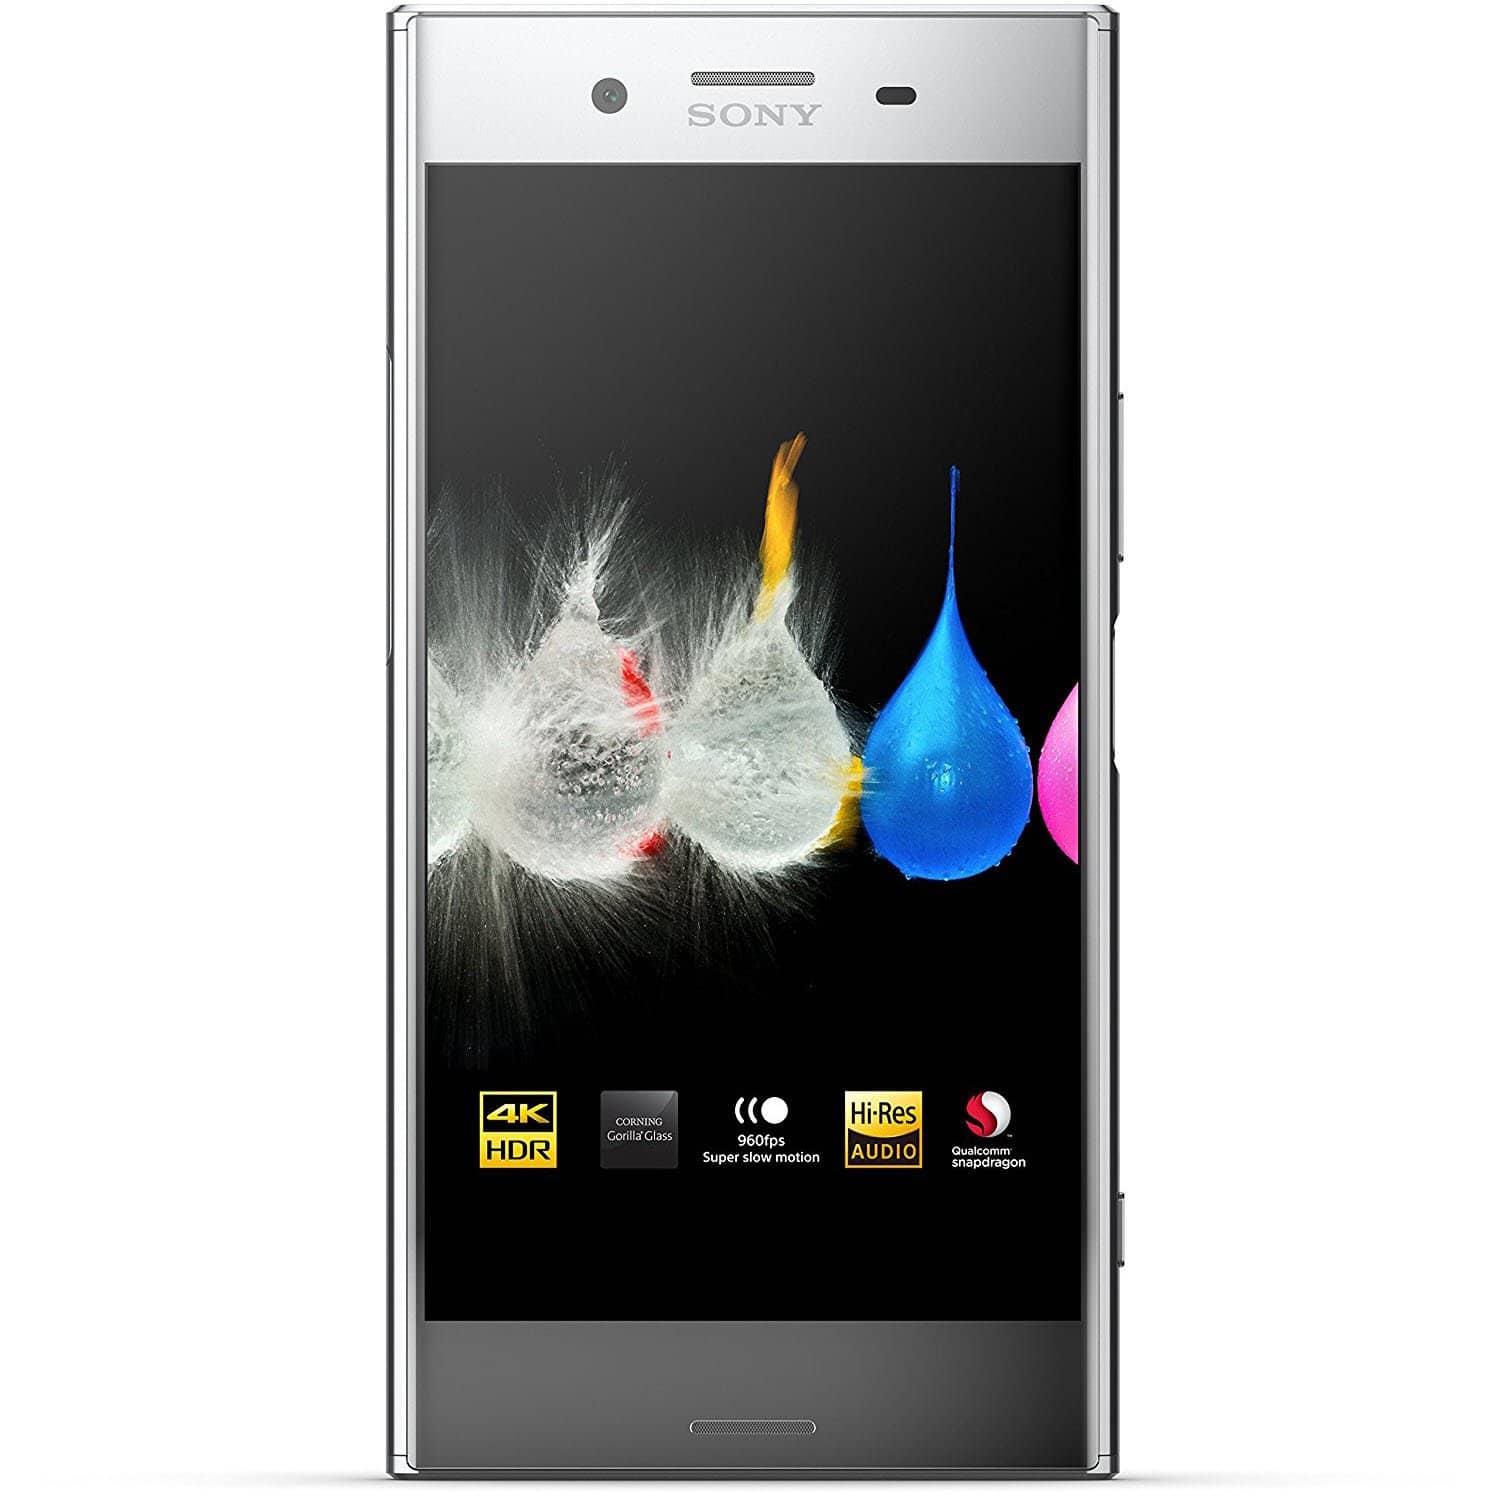 Sony Xperia XZ Premium - Unlocked Smartphone - 5.5